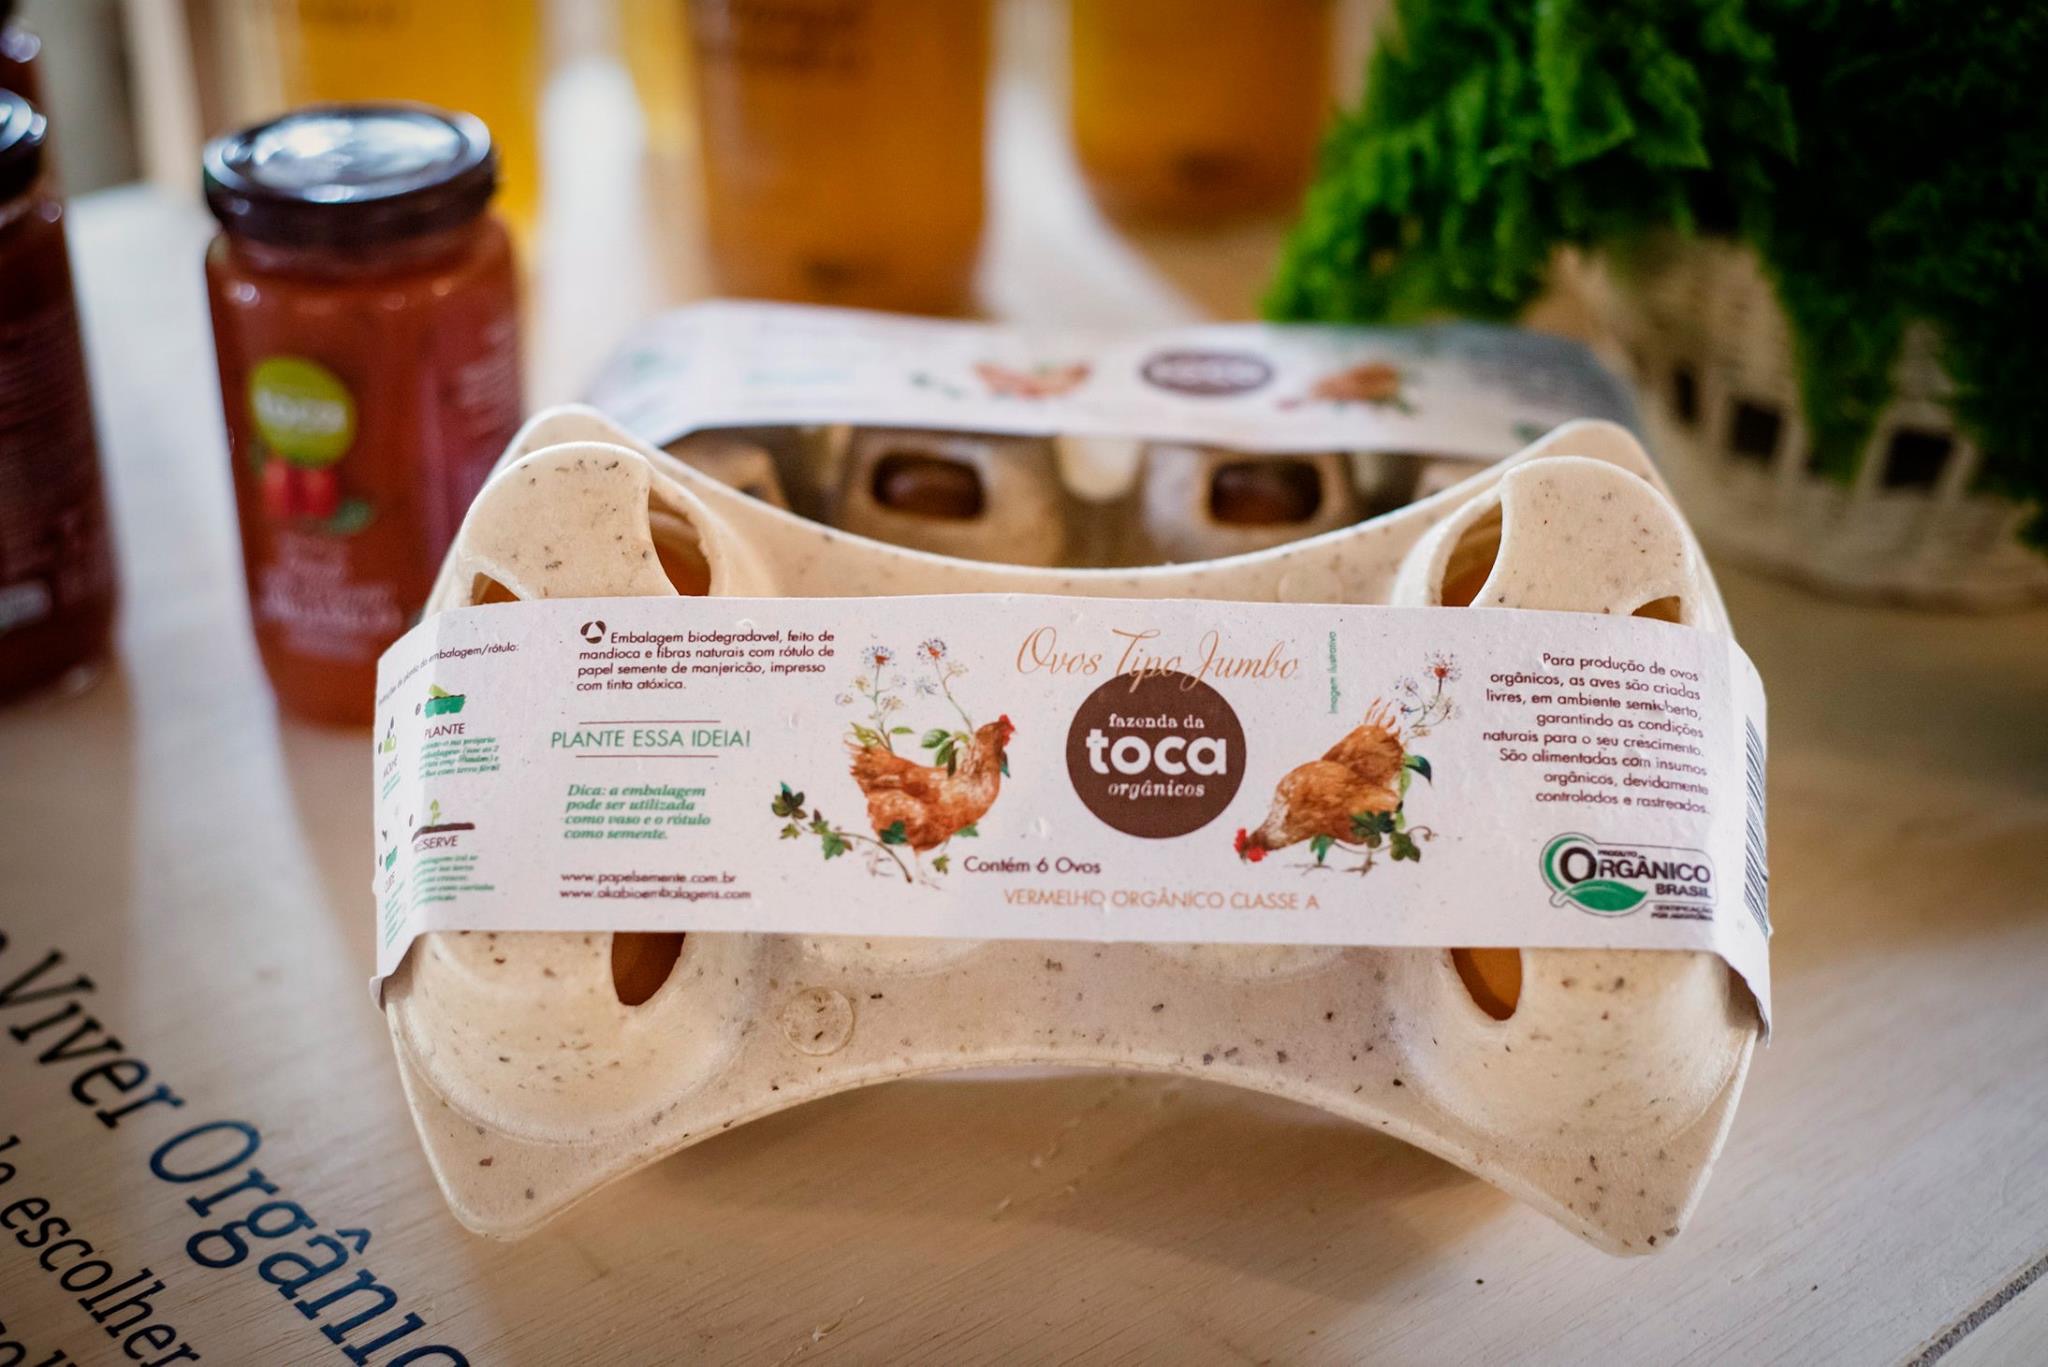 Cinta caixa de ovos Fazenda da Toca | Embalagens sustentáveis